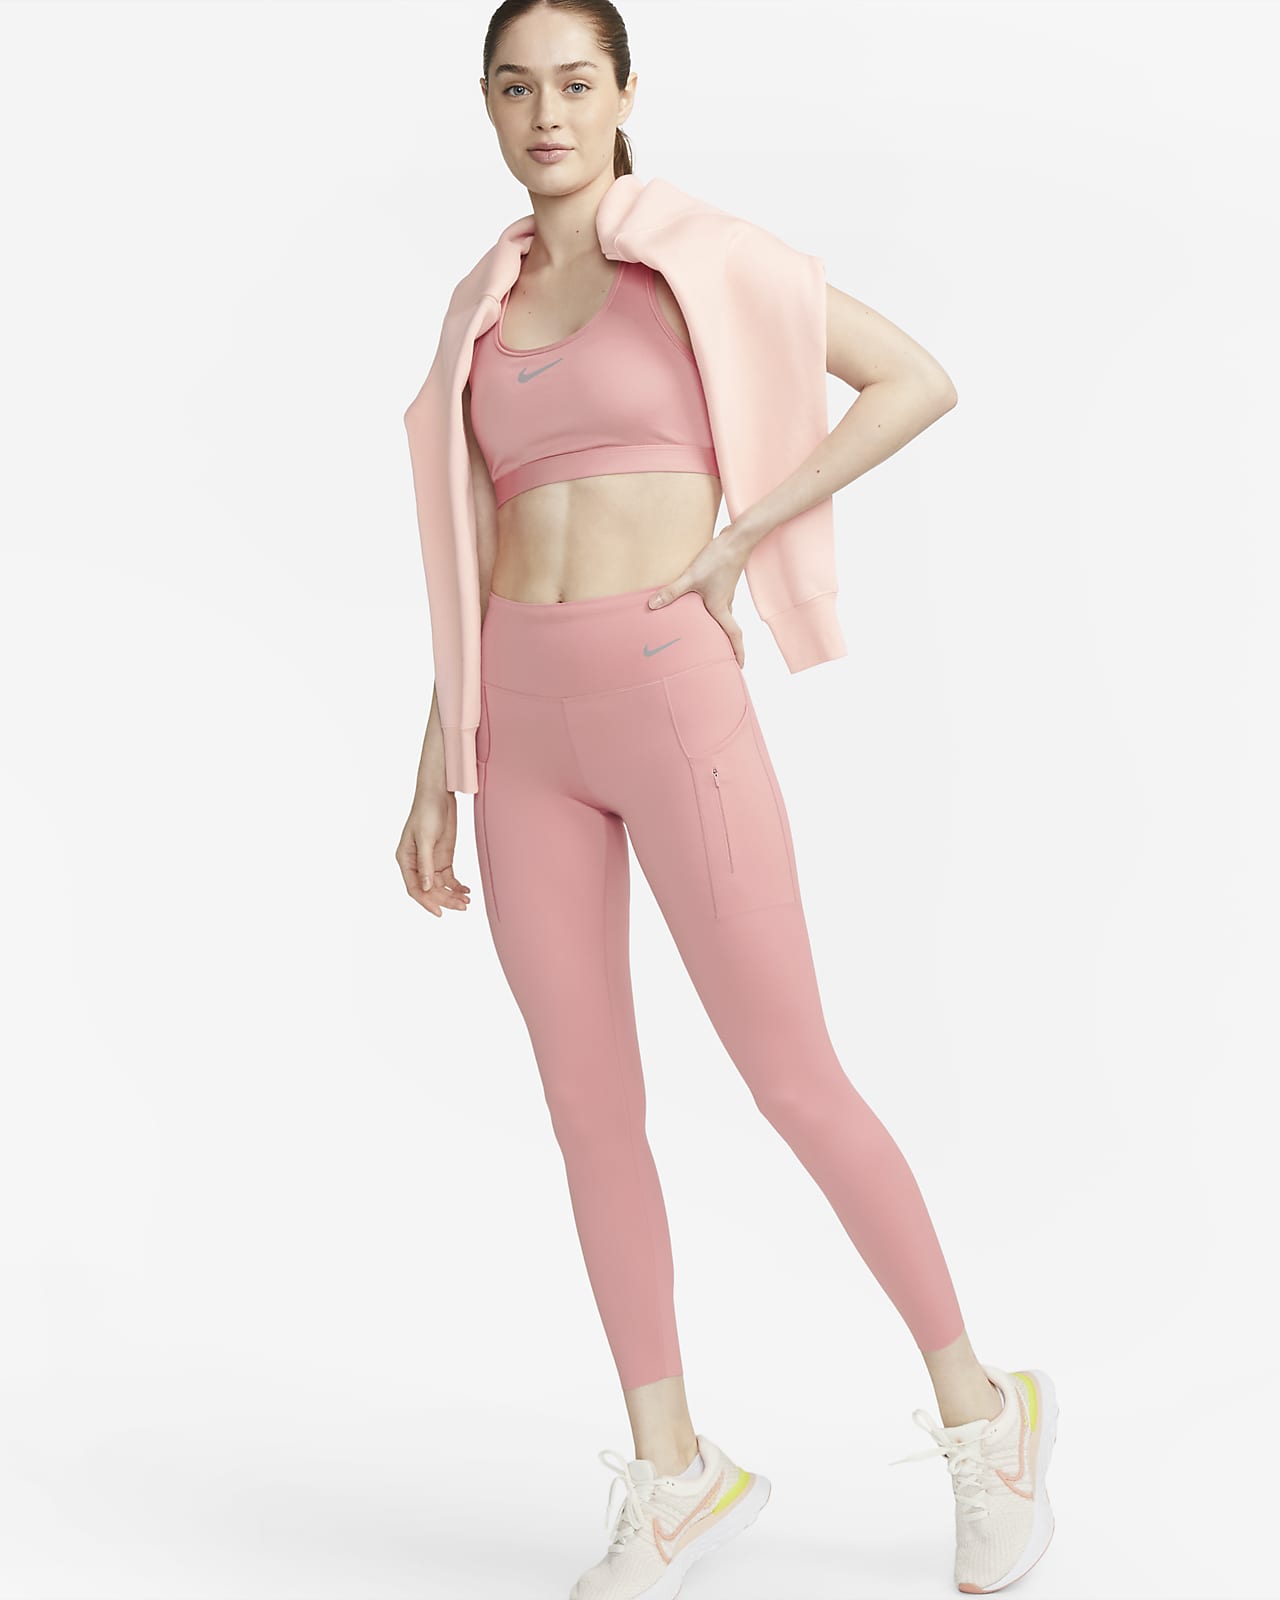 Nike Go leggings i 7/8 lengde med fast støtte, mellomhøyt liv og lommer til dame